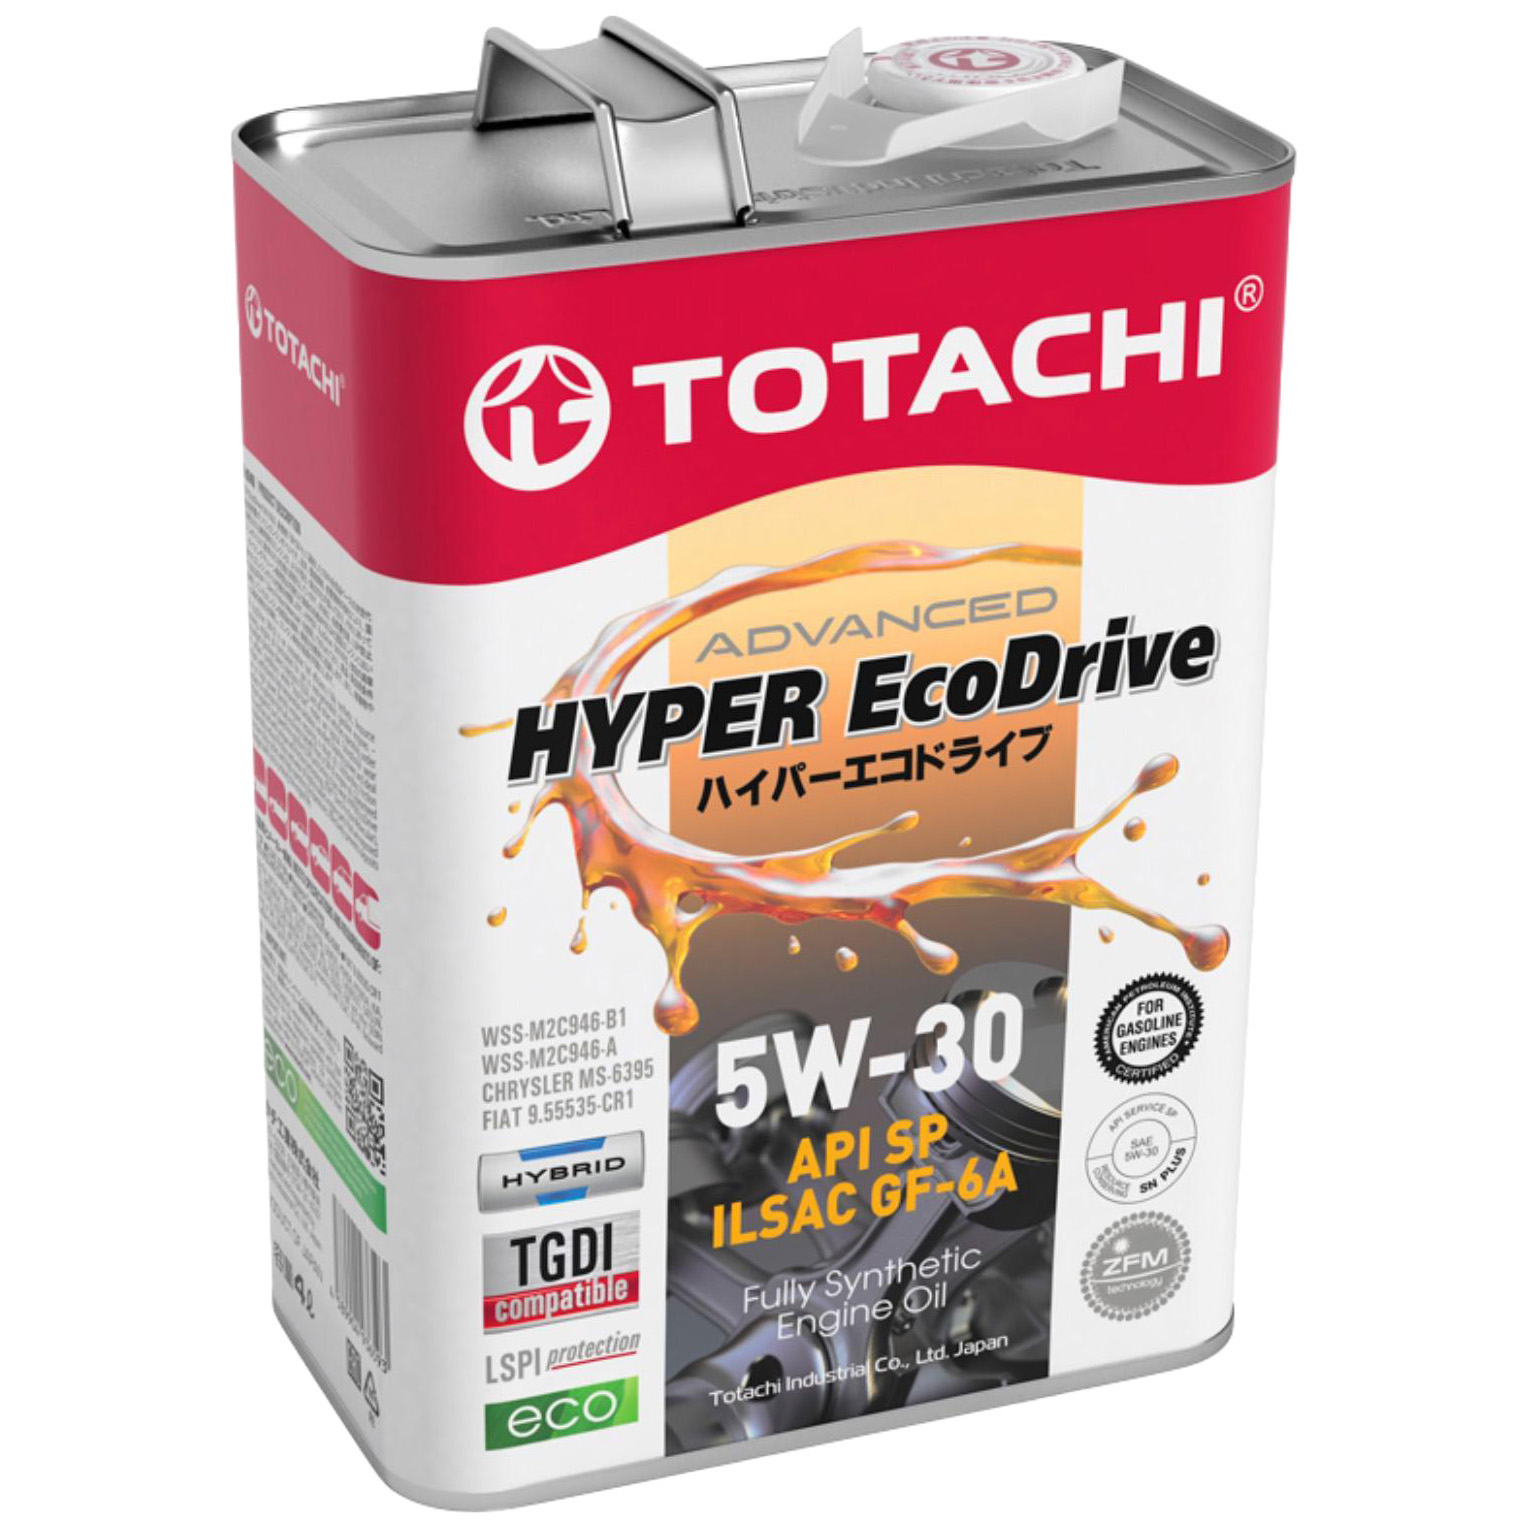 фото Totachi масло моторное totachi e0304 hyper ecodrive, синтетическое, 5w-30, sp/gf-6a, 4 л